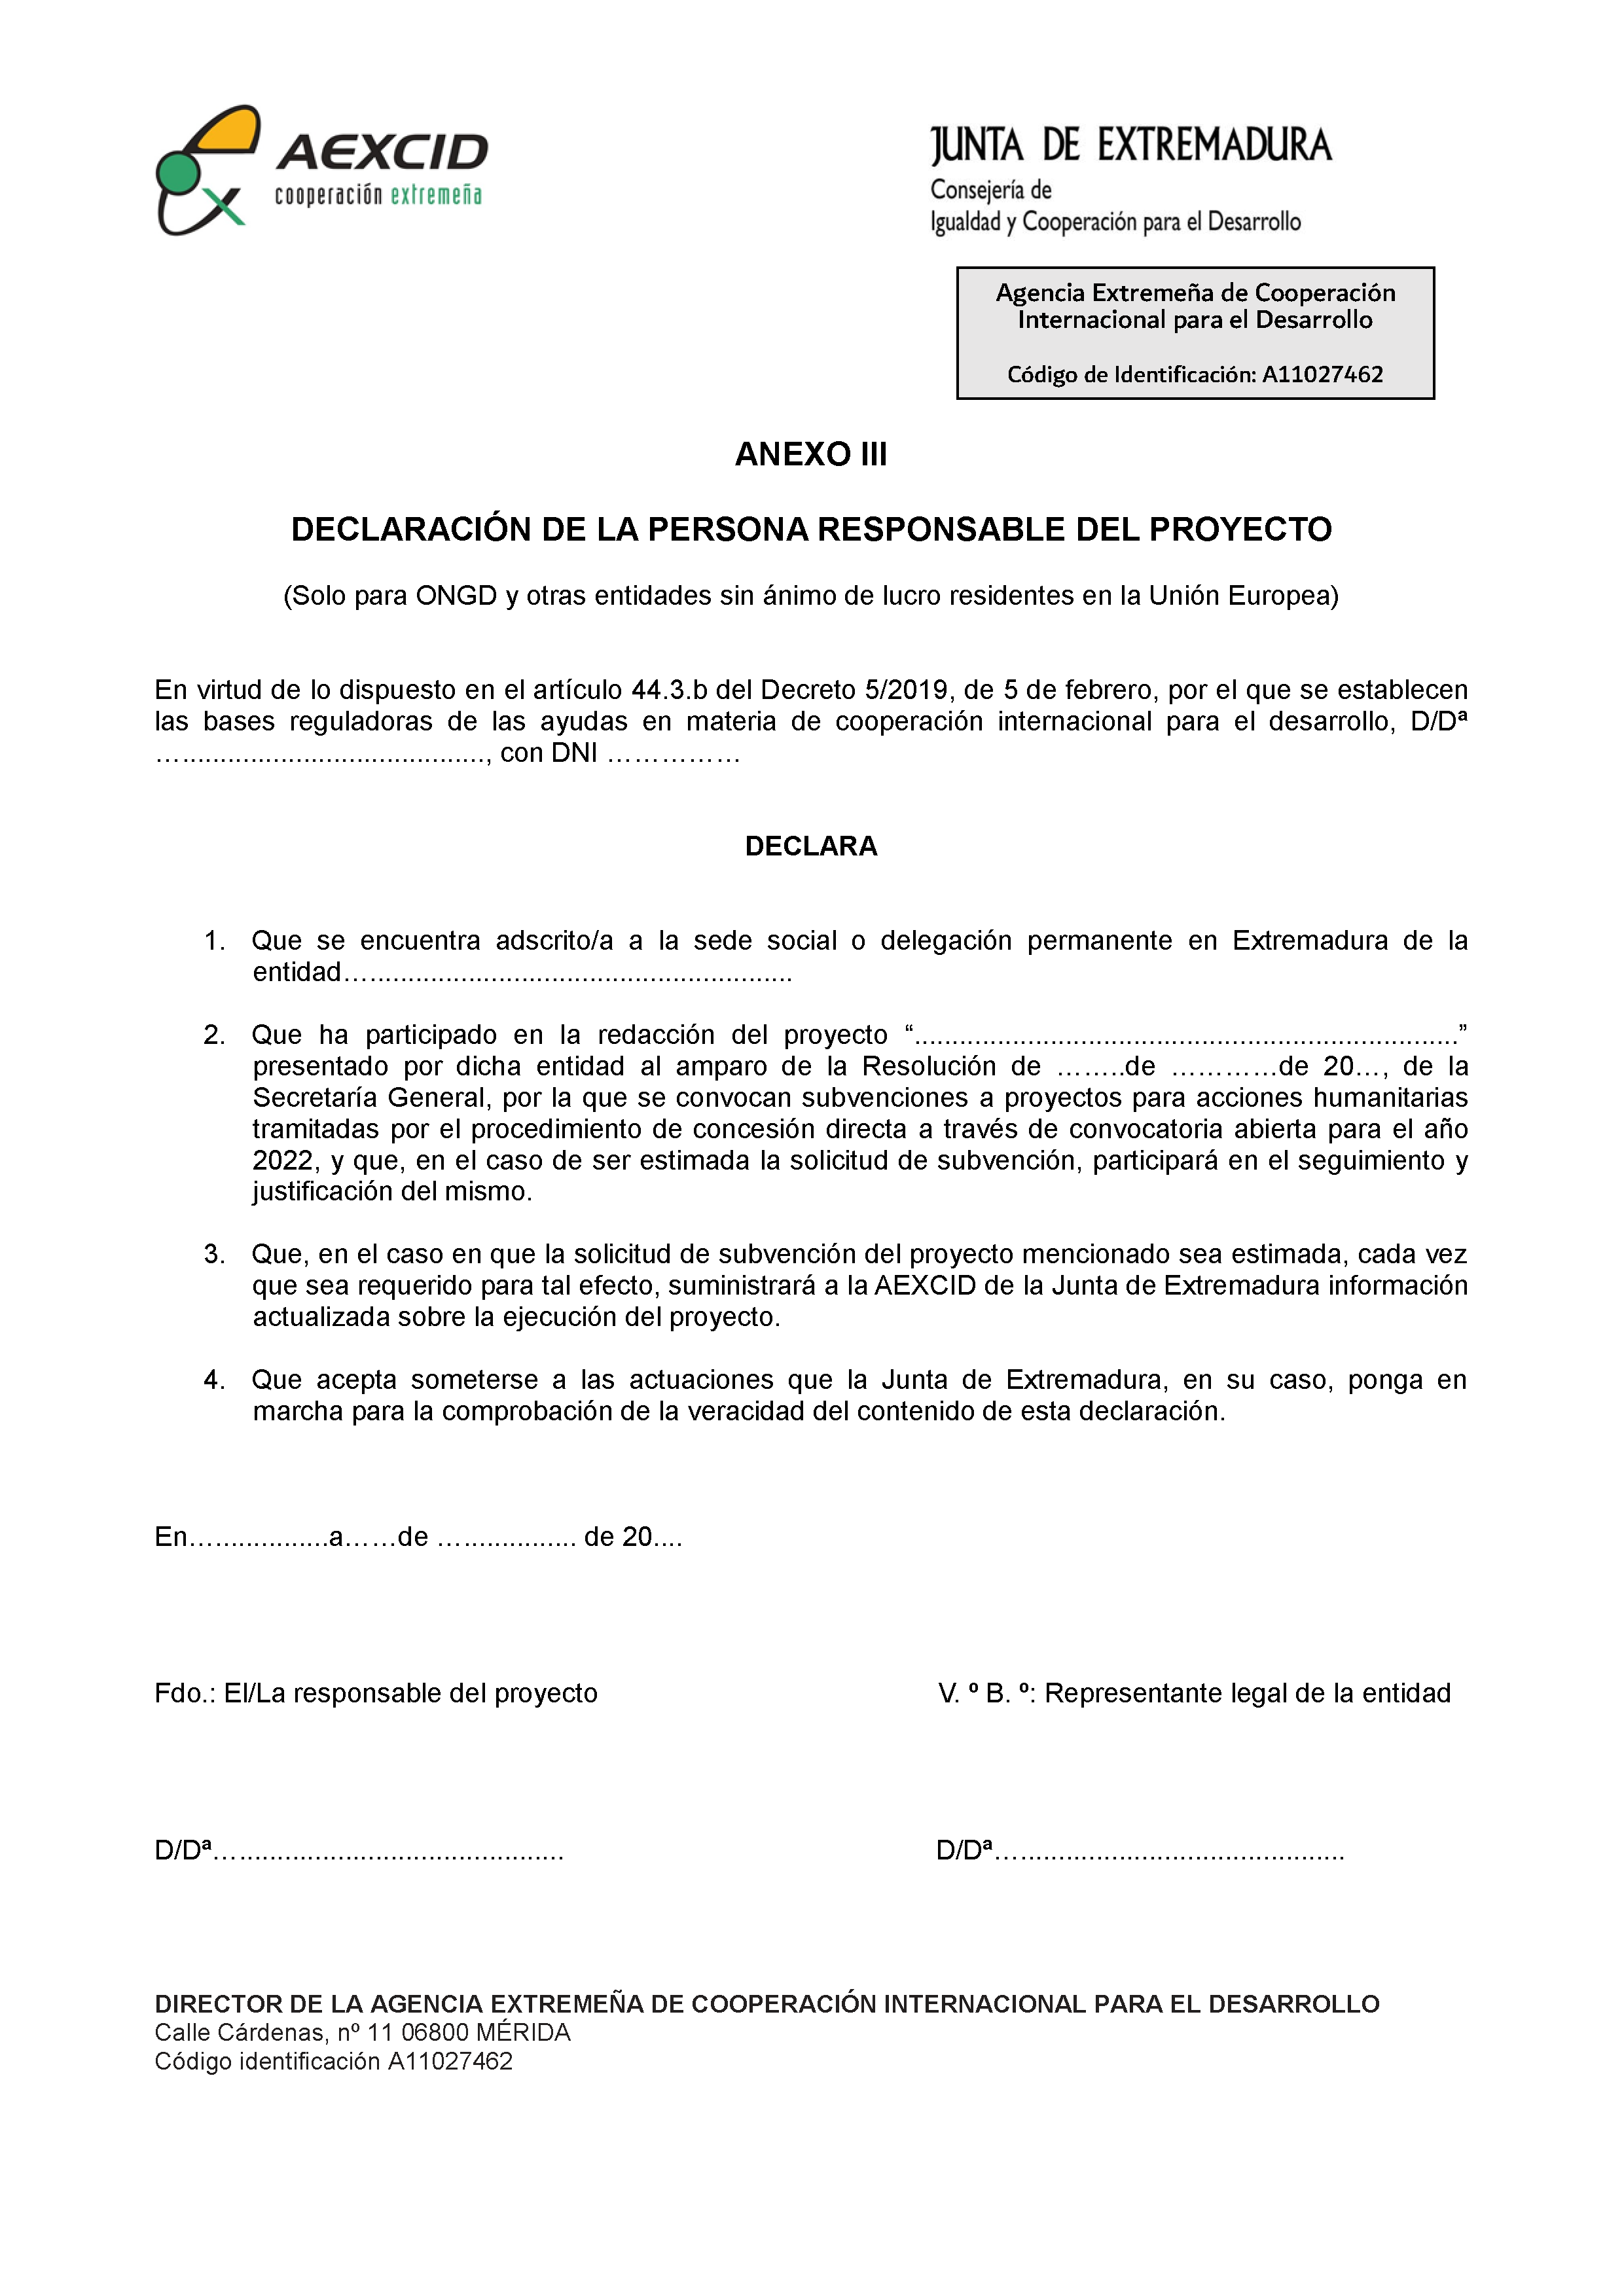 ANEXO III DECLARACION DE LA PERSONA RESPONSABLE DEL PROYECTO